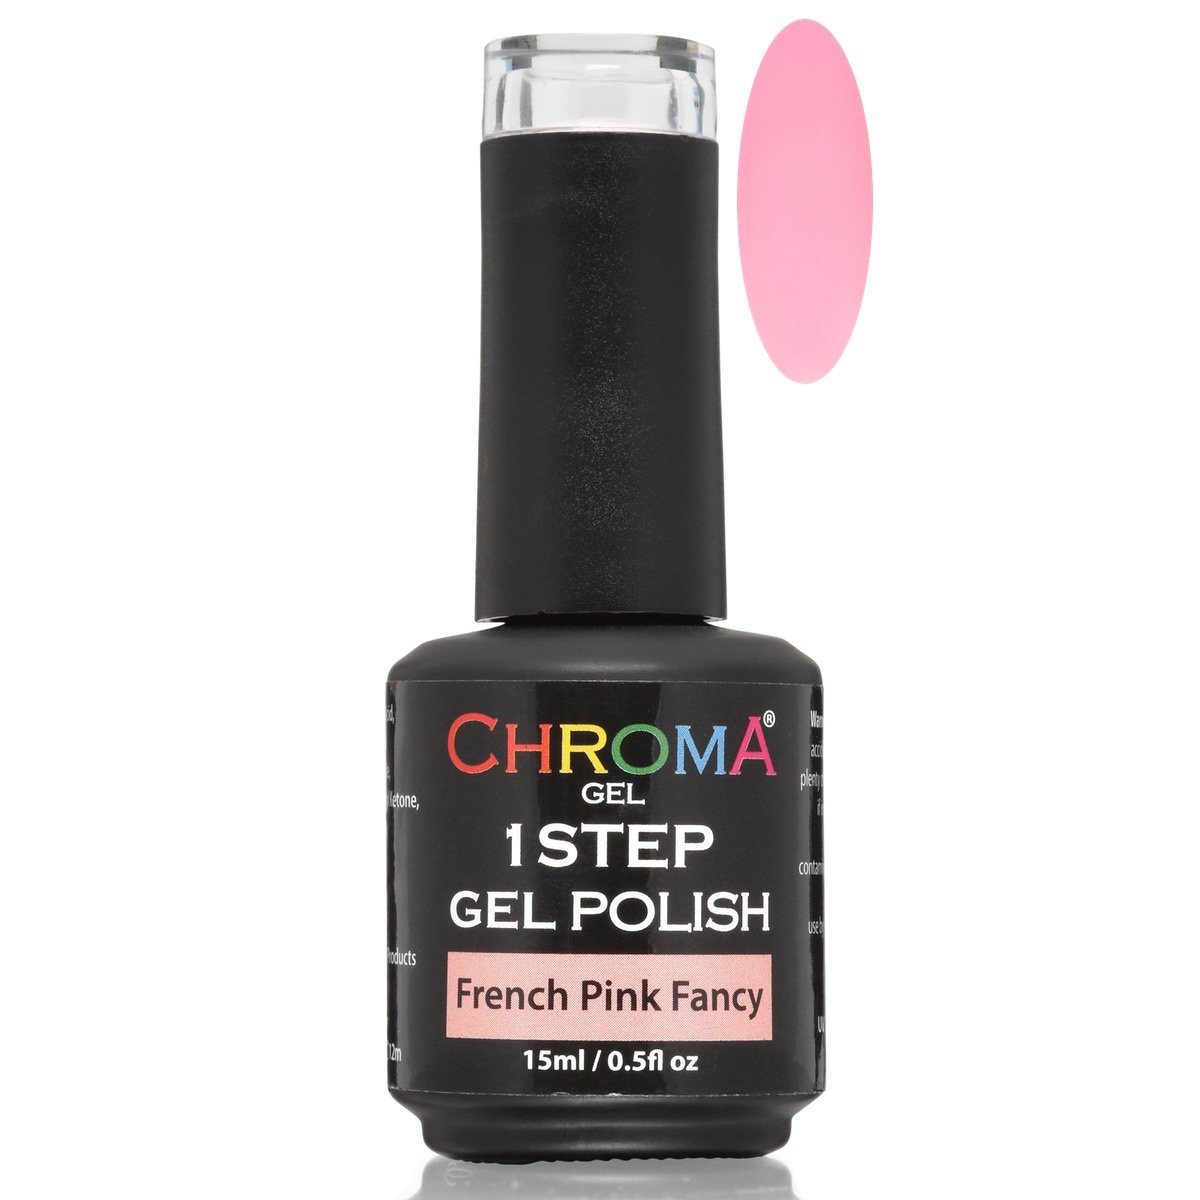 Chroma Gel 1 Step Gel Polish French Pink Fancy No.65 - Chroma Gel